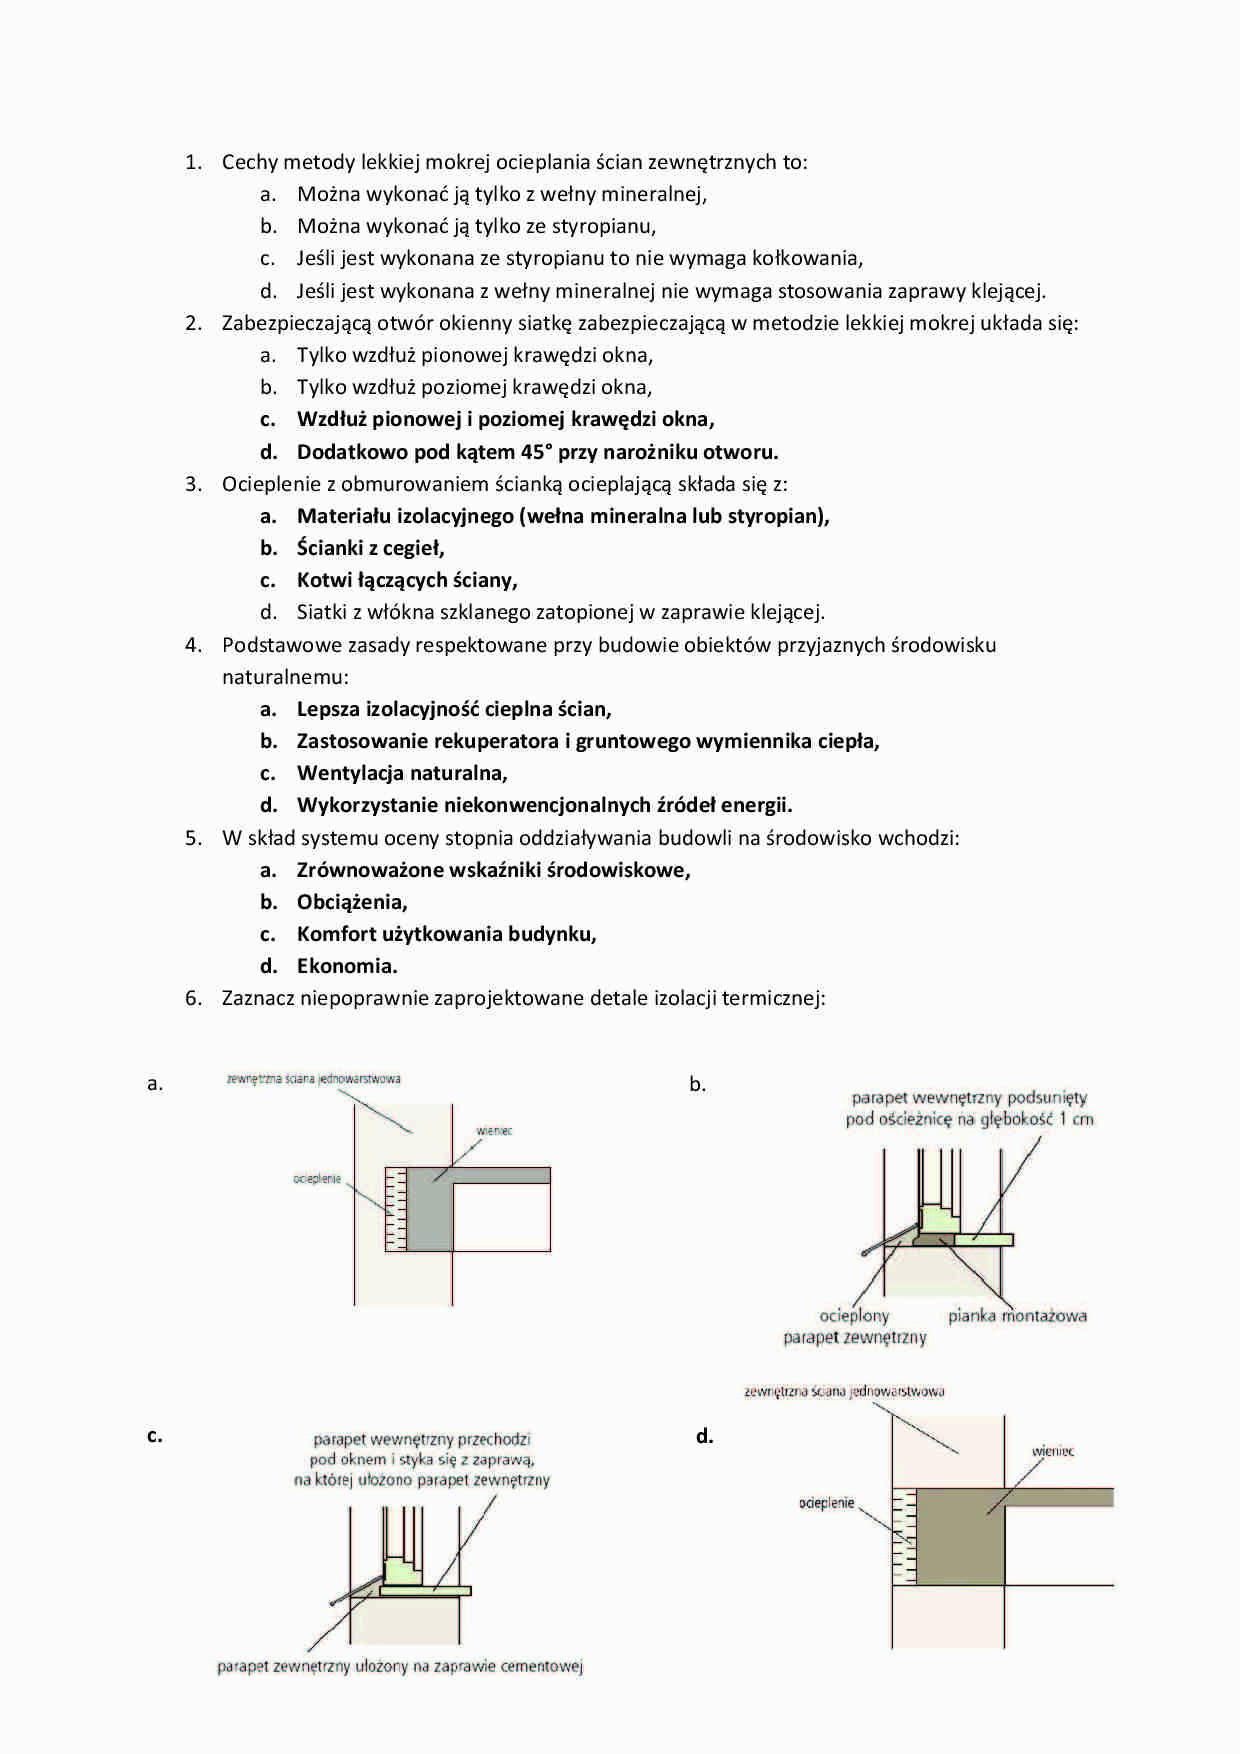 Fizyka budowli - pytania egzaminacyjne Part 1 - strona 1